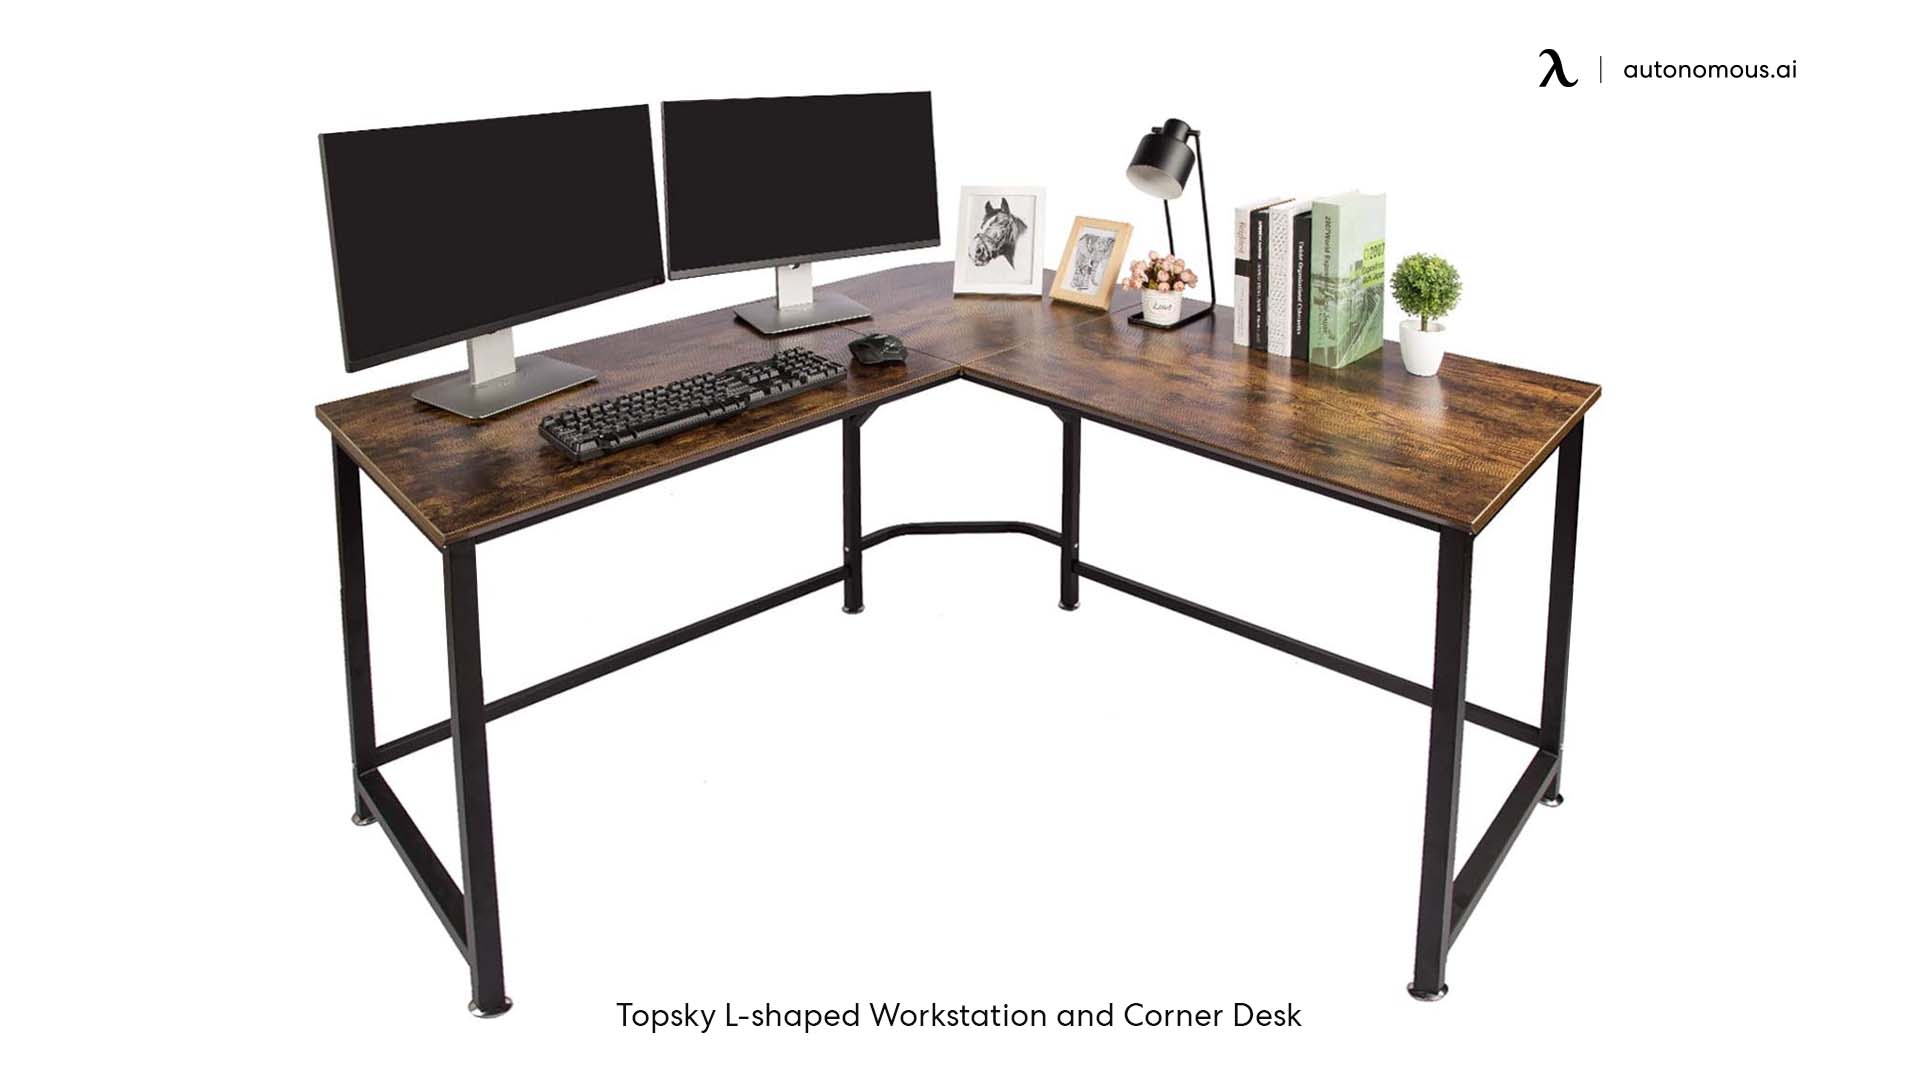 Topsky L-shaped Workstation and Corner Desk